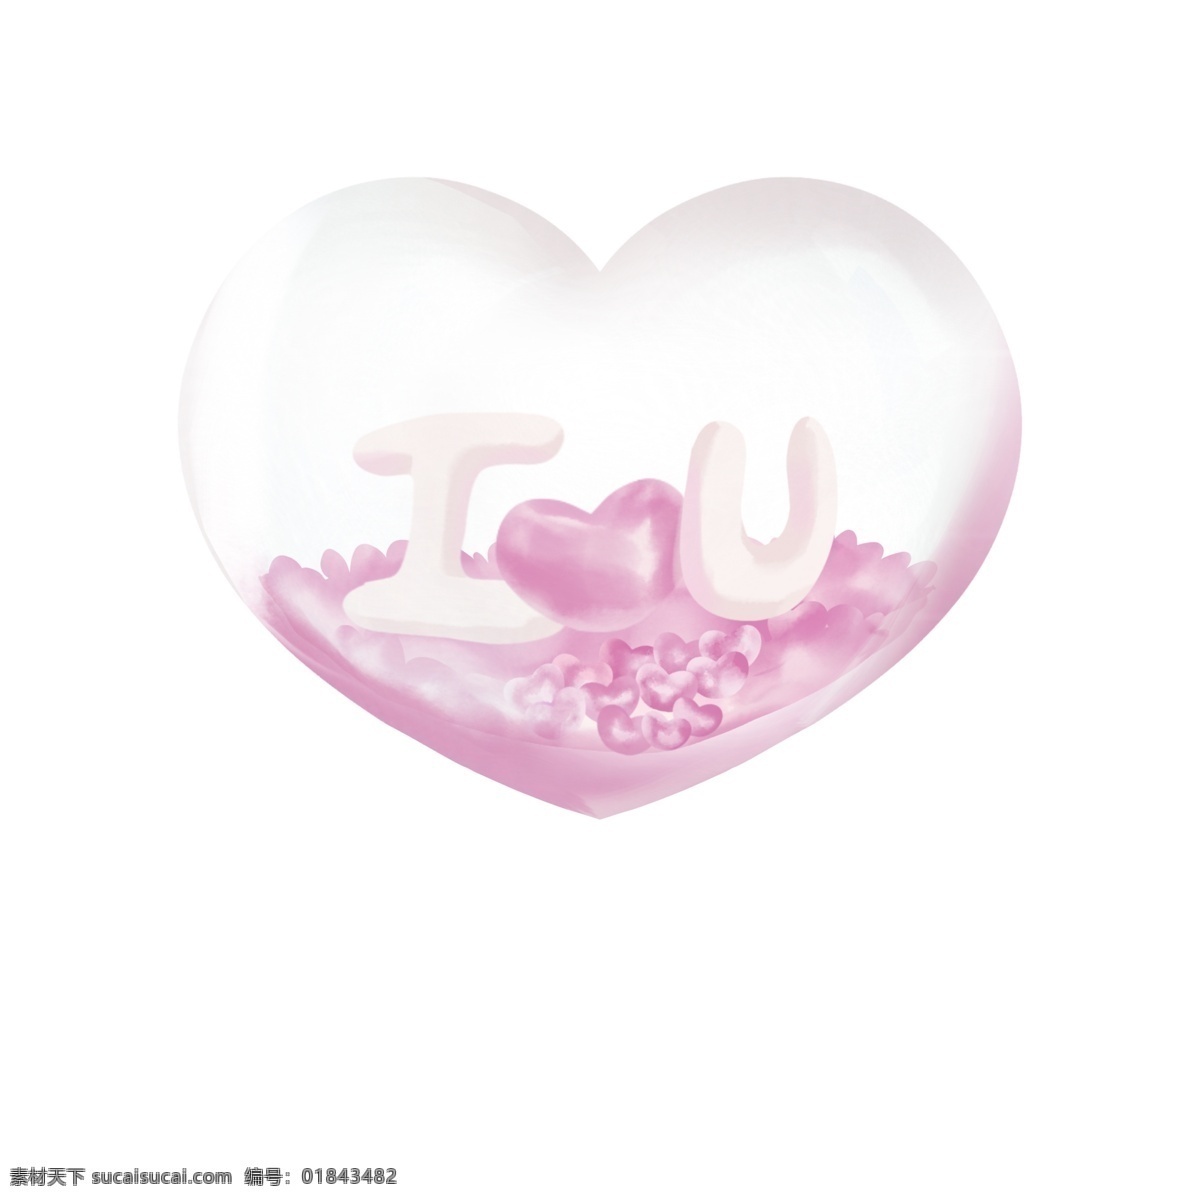 表白 粉色 透明 爱心 节日 活动 爱情 装饰元素